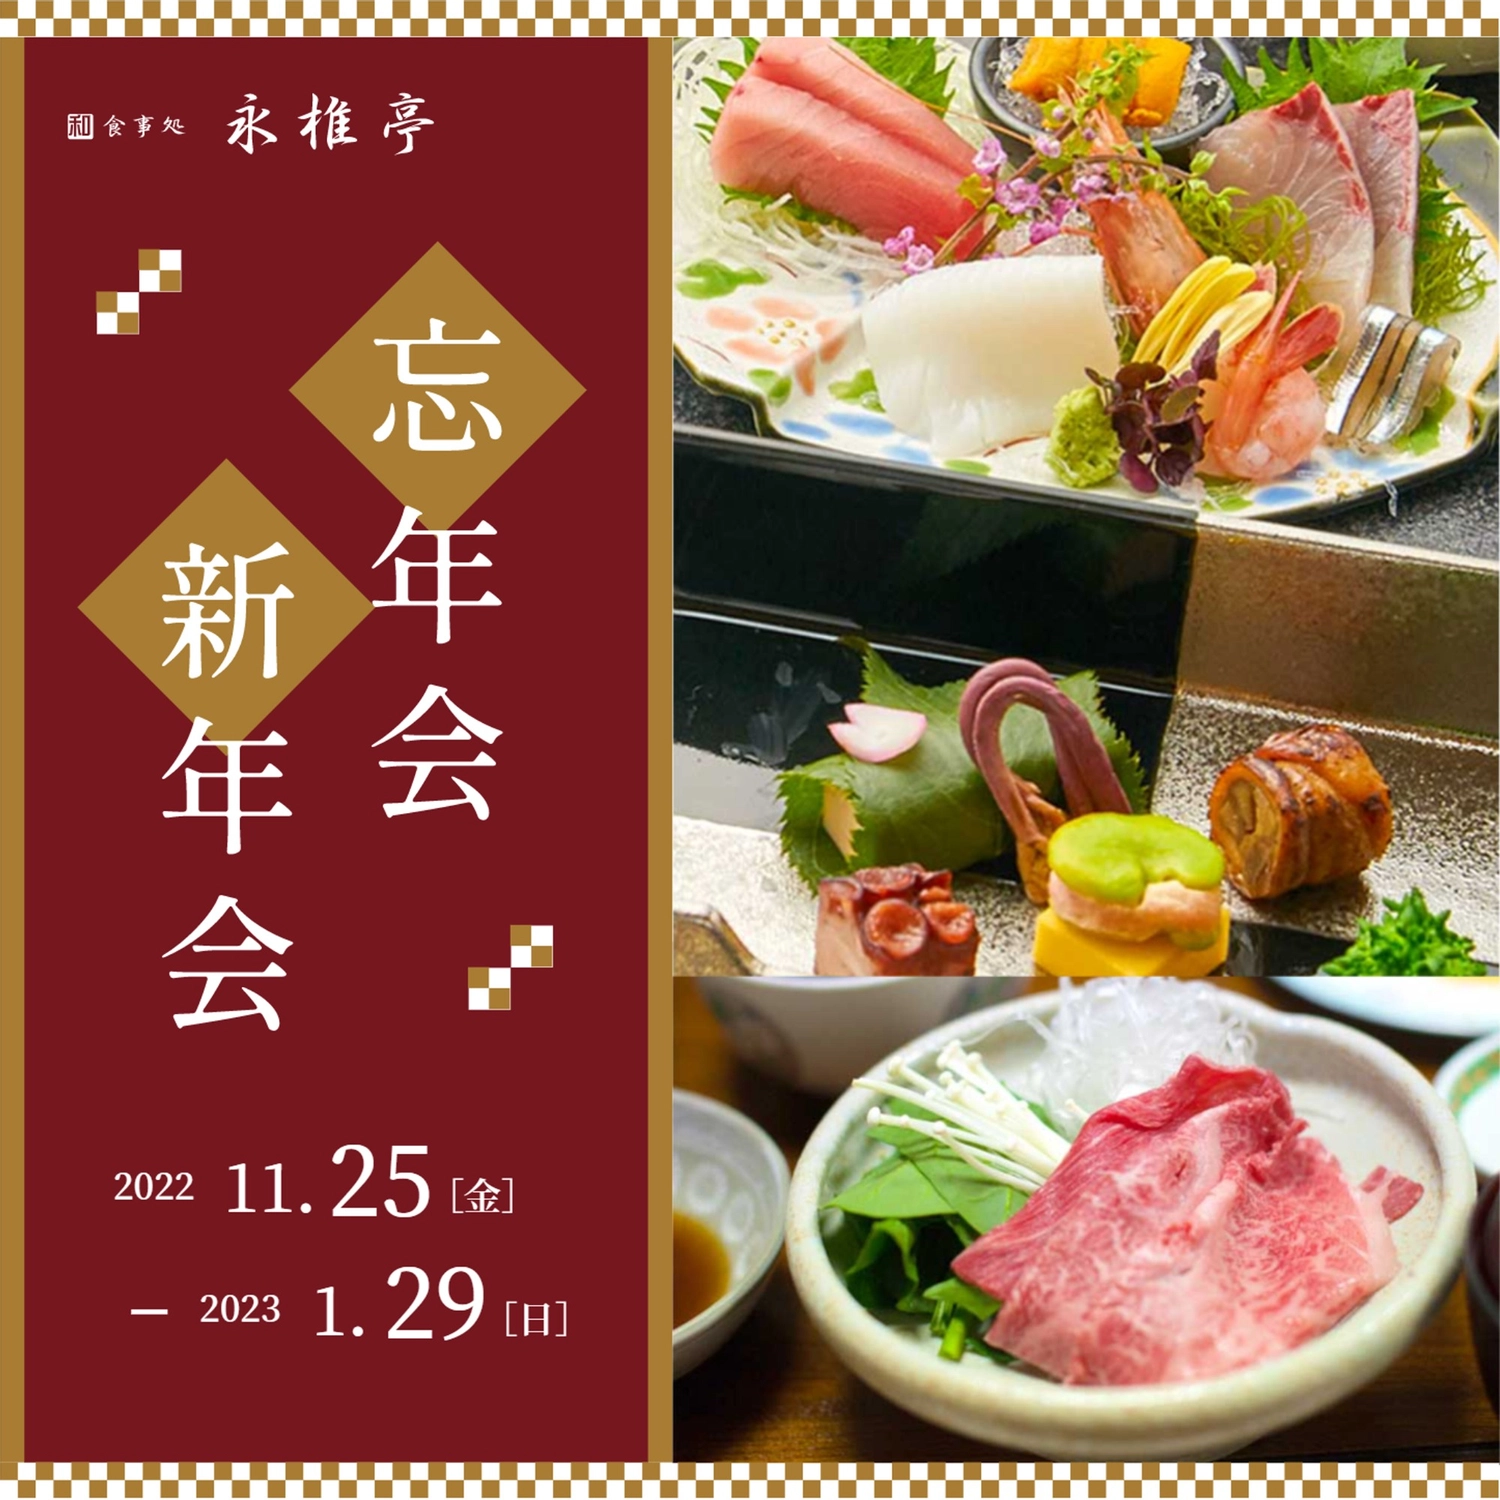 すき焼きやお造りの写真を使った忘年会新年会の広告
, sashimi, the beginning of the year, the end of the year, Instagram Post template